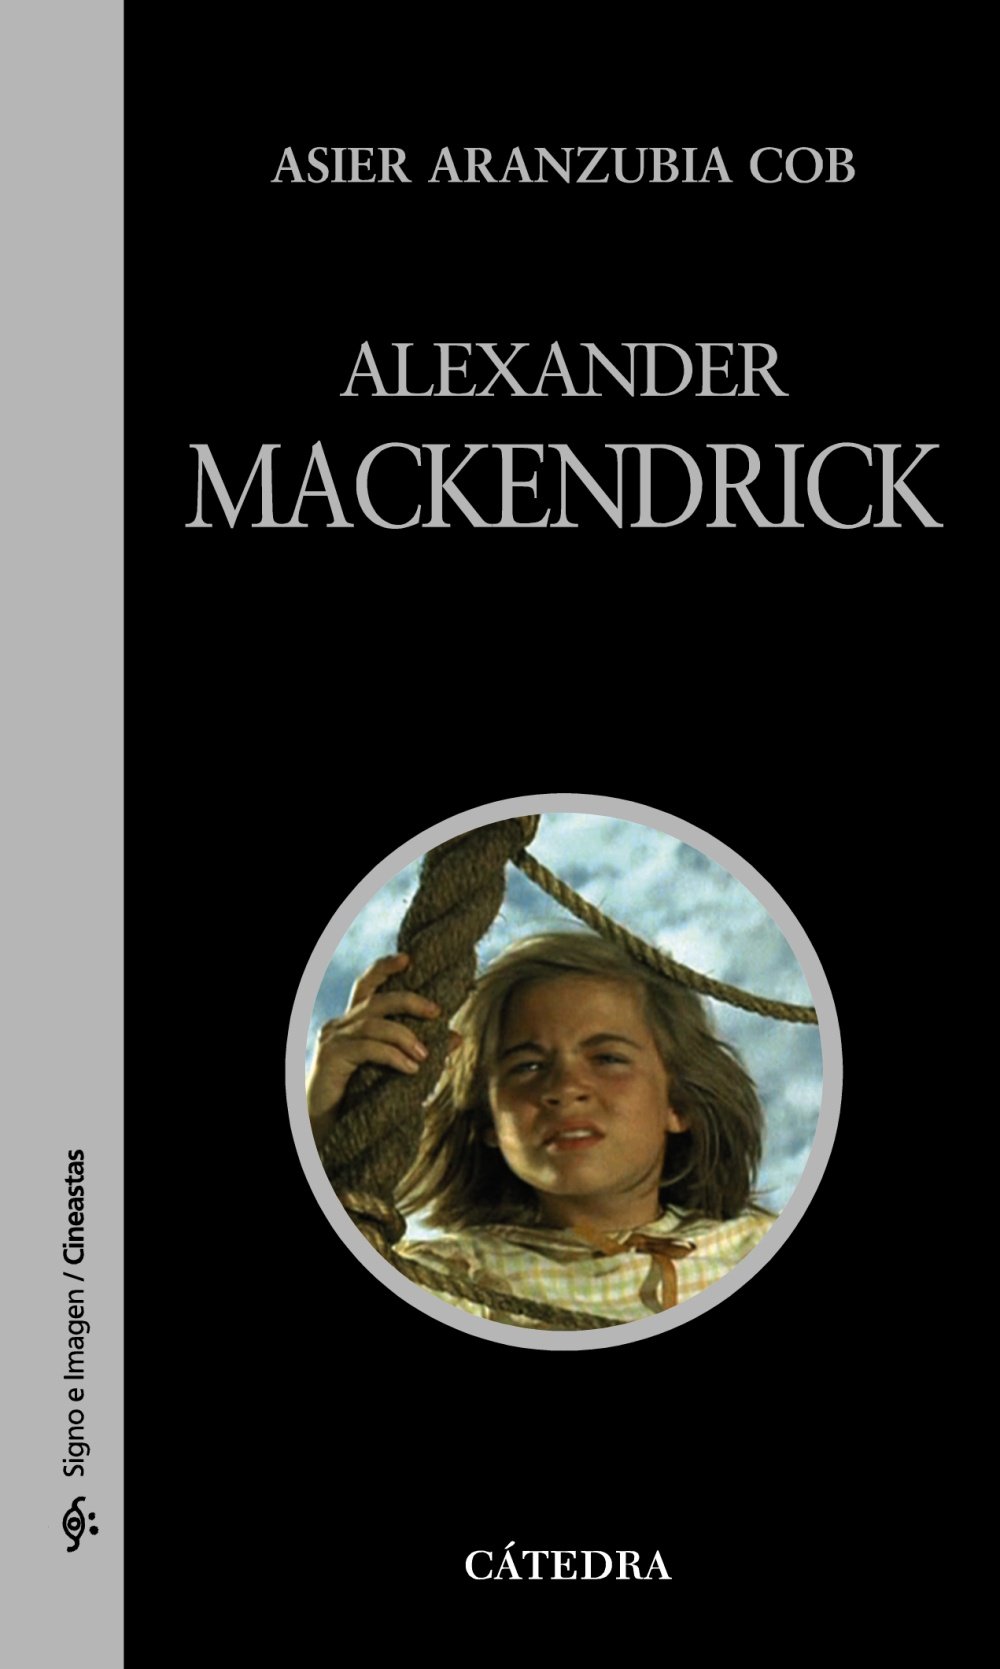 Libro: Alexander Mackendrick por Asier Aranzubia Cob